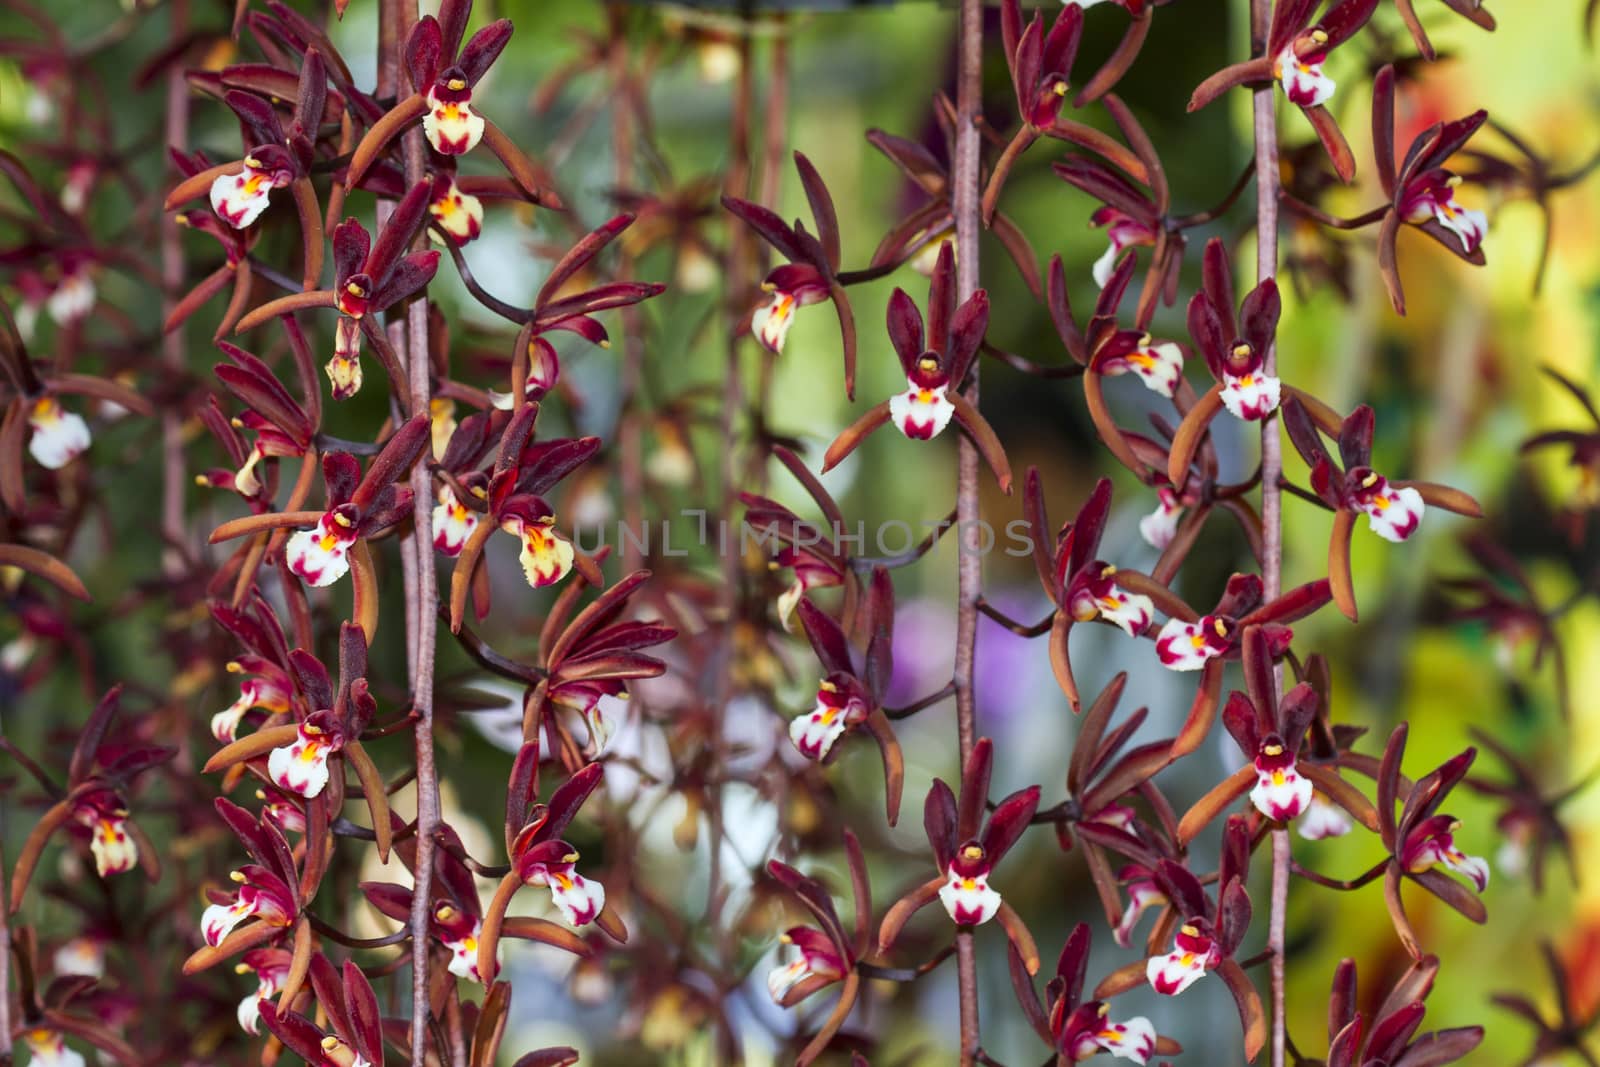 Cymbidium atropurpureum  is epiphytic orchid Close up viwe.